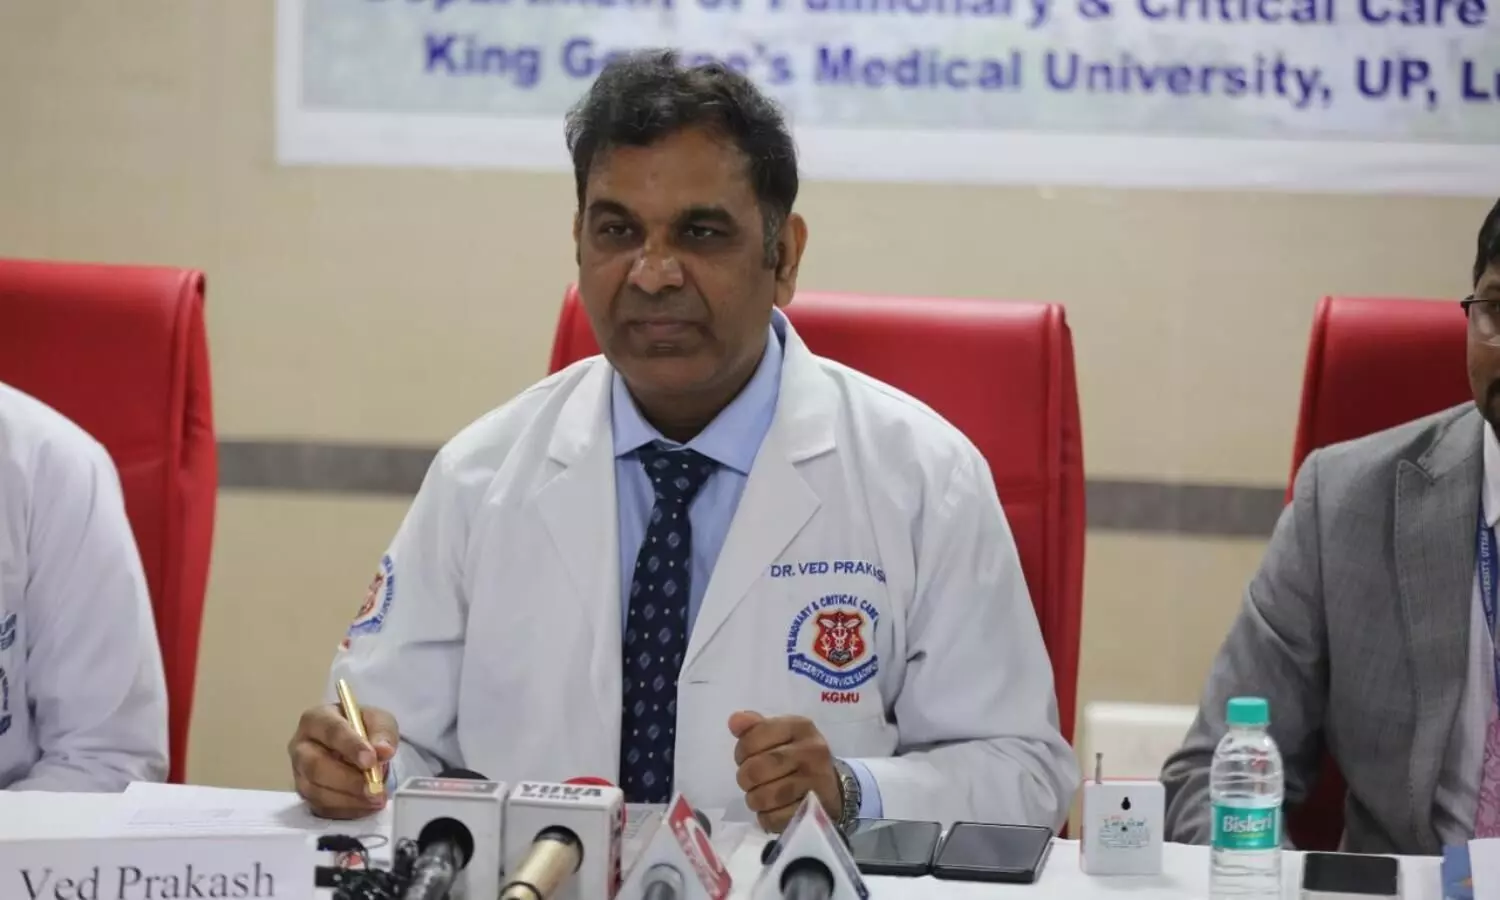 World Cancer Day KGMU Dr Ved Prakash